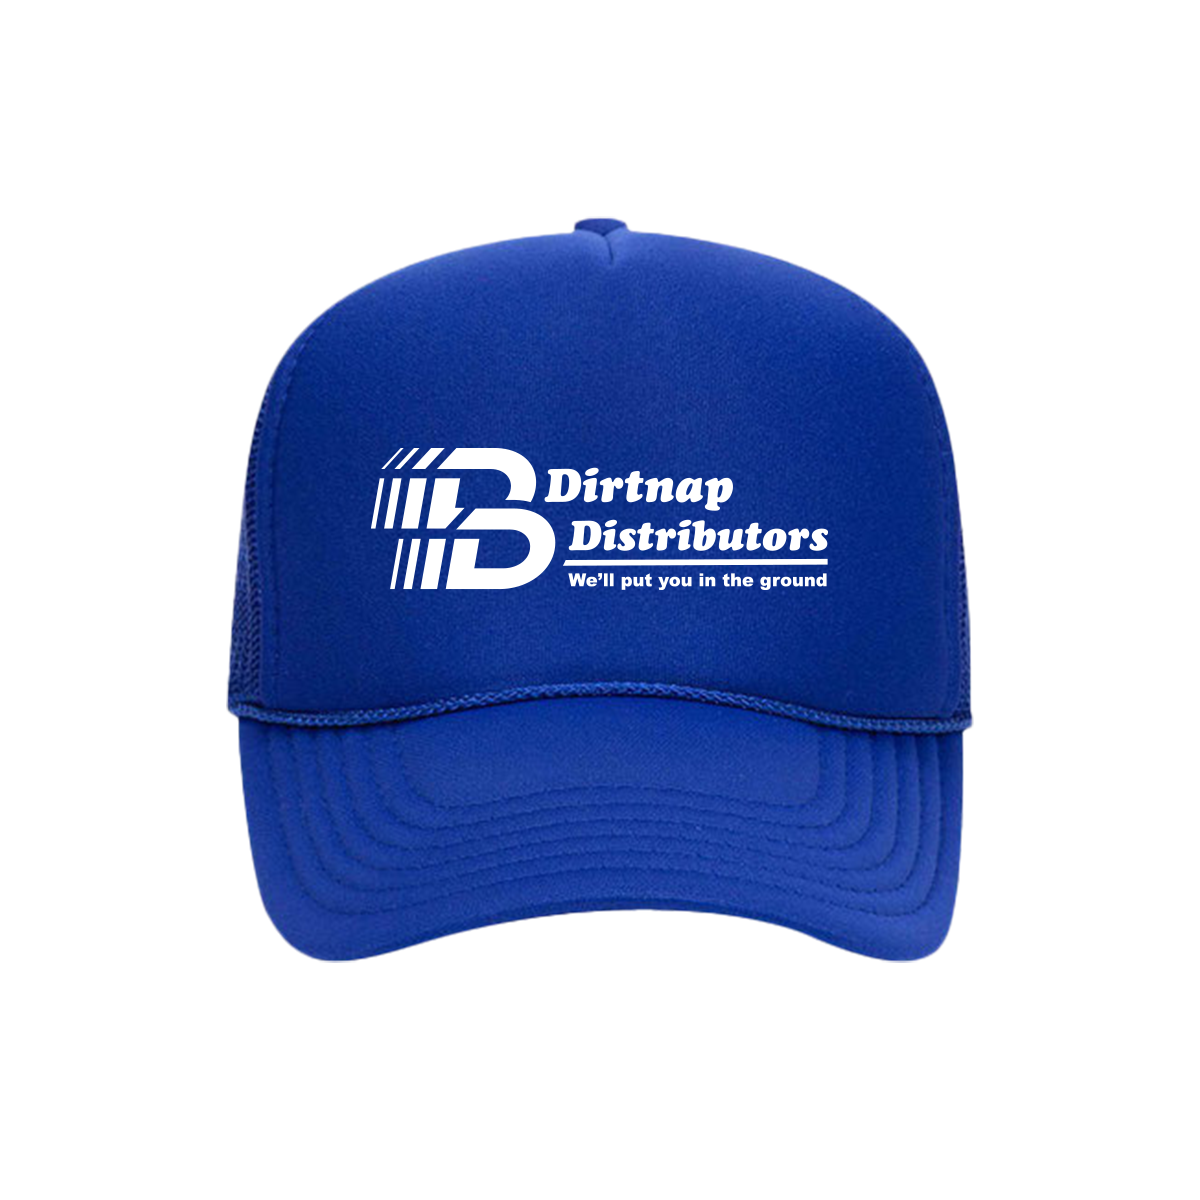 Dirtnap Distributors Trucker Hat